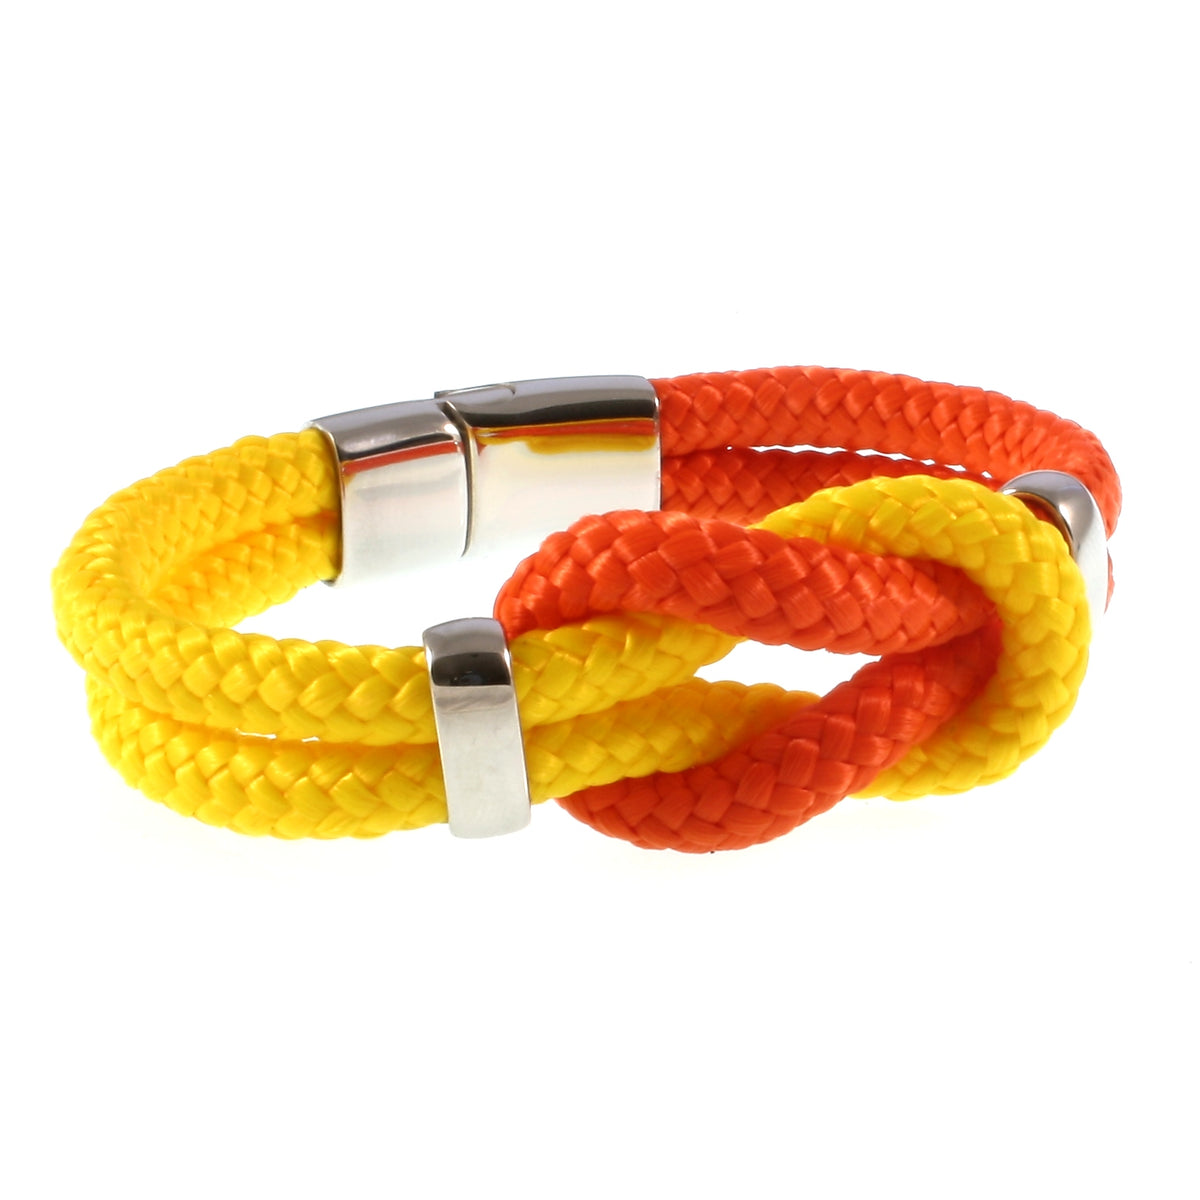 Damen-Segeltau-armband-pure-orange-gelb-silber-geflochten-Edelstahlverschluss-vorn-wavepirate-shop-st